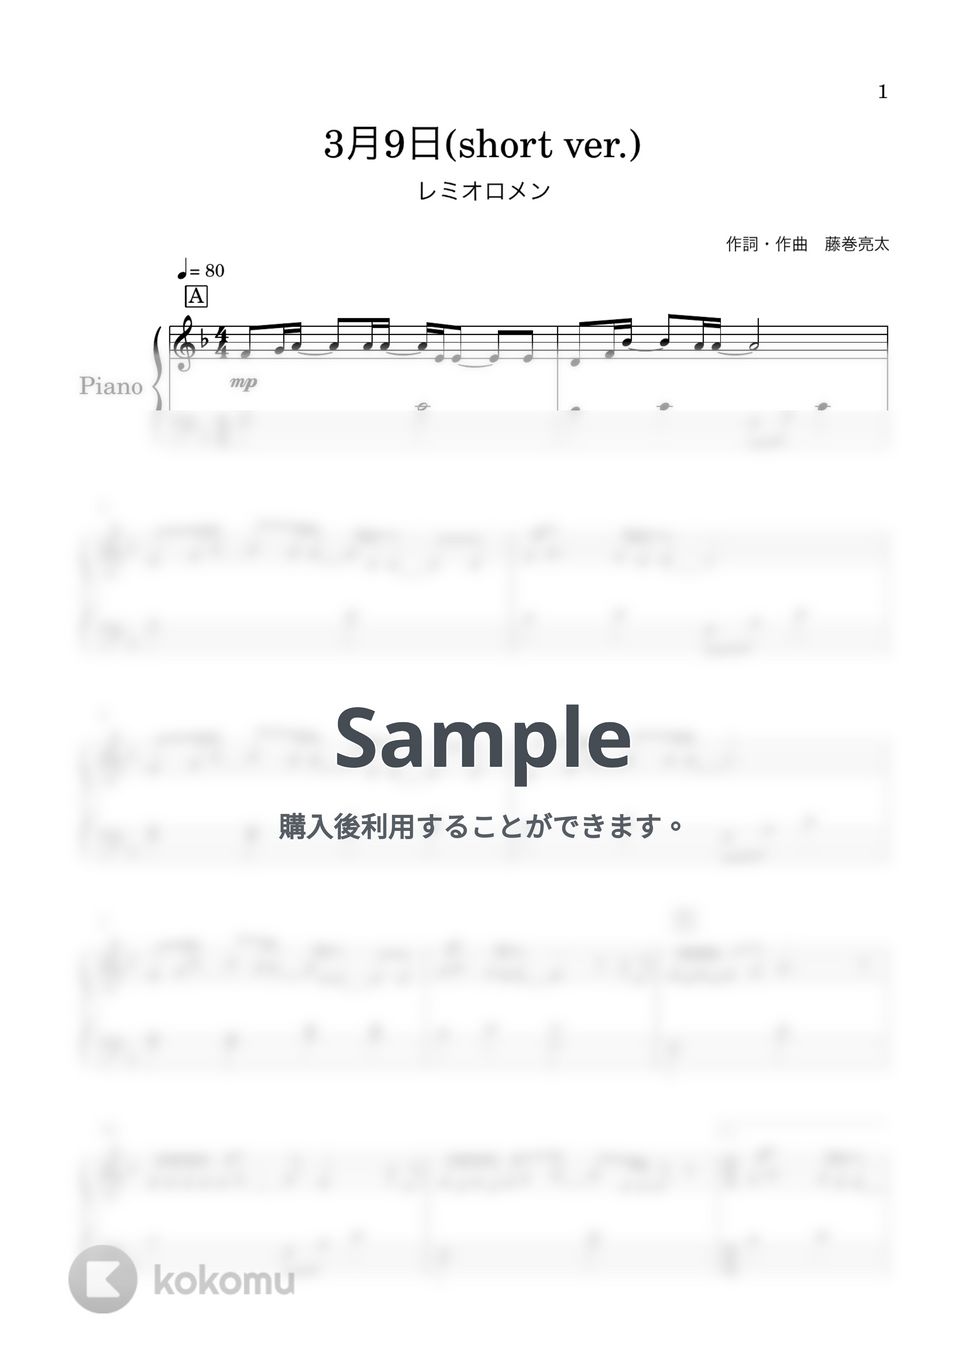 レミオロメン - 3月9日 (short ver.) by はみんぐのかんたん楽譜